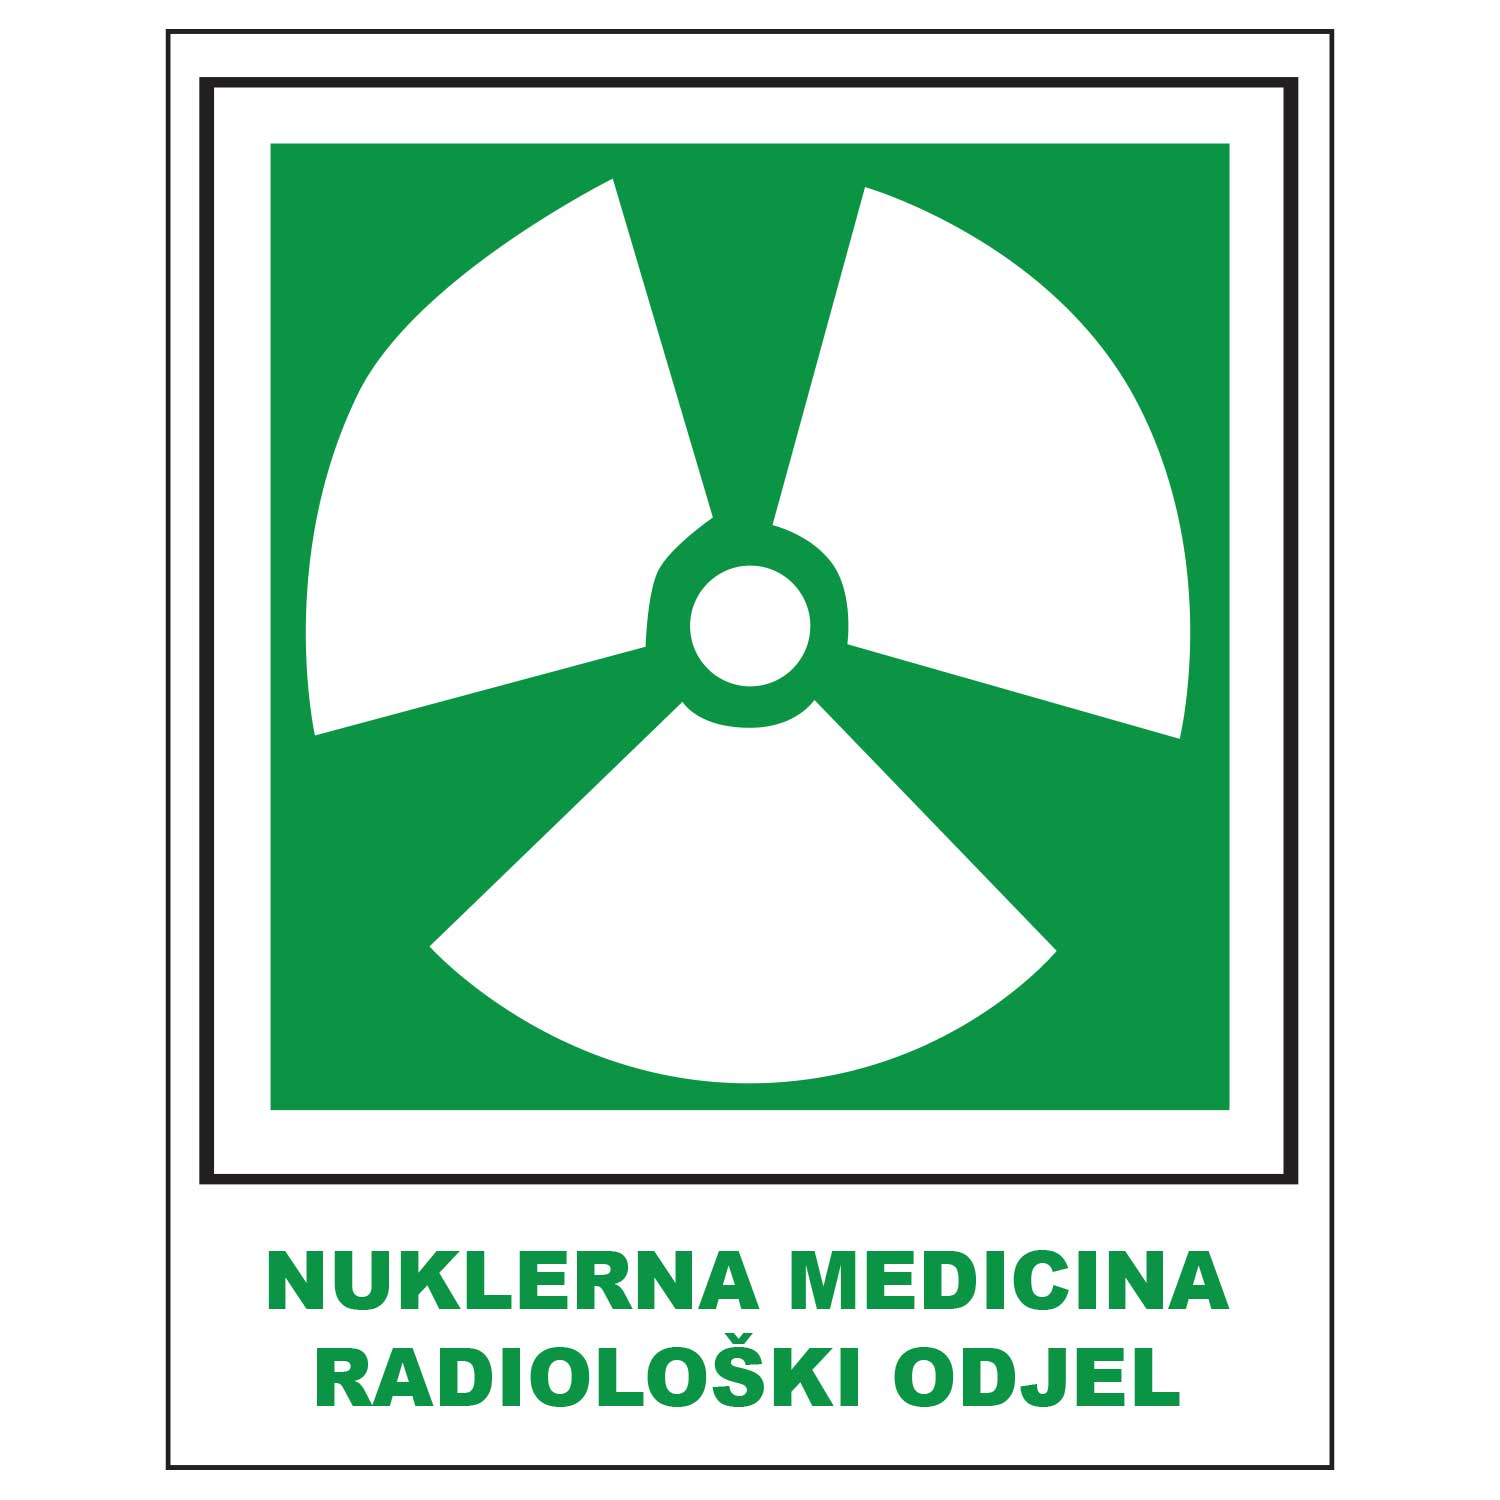 Nuklerna medicina radioloski odjel, Opće informacije, OP4080